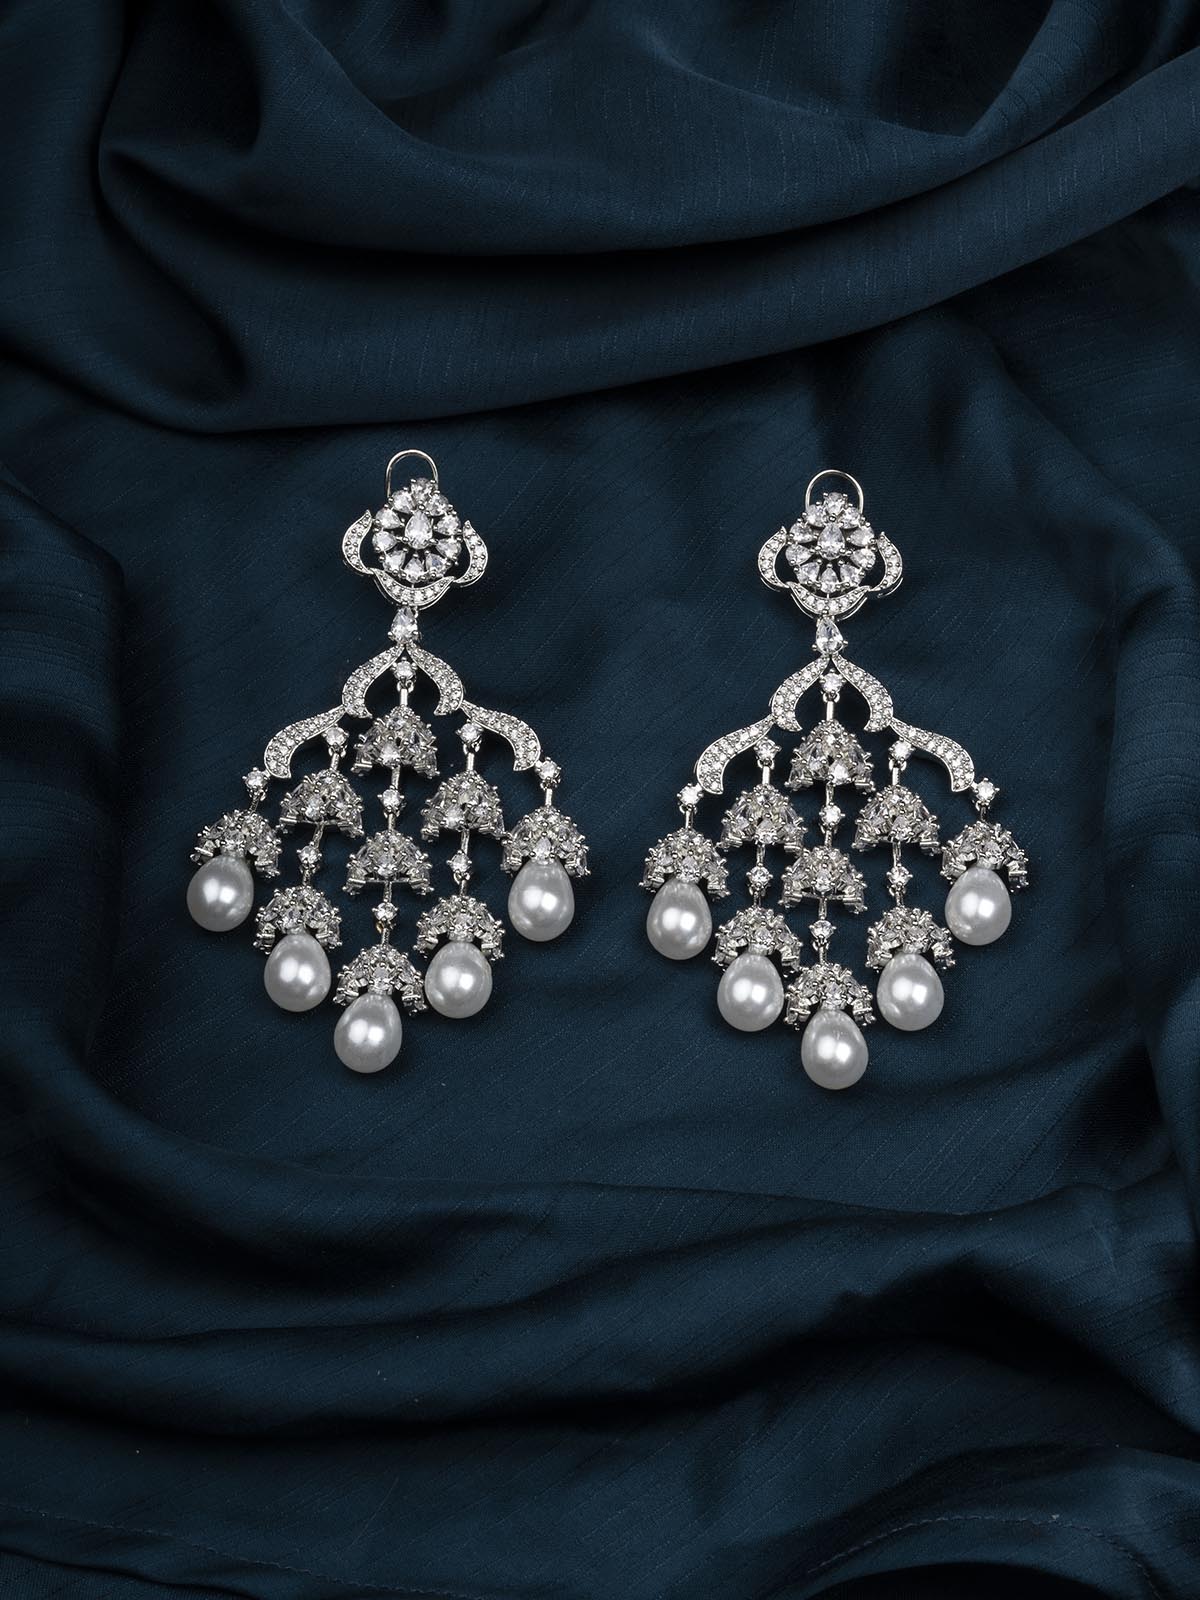 CZEAR513 - Silver Plated Faux Diamond Earrings